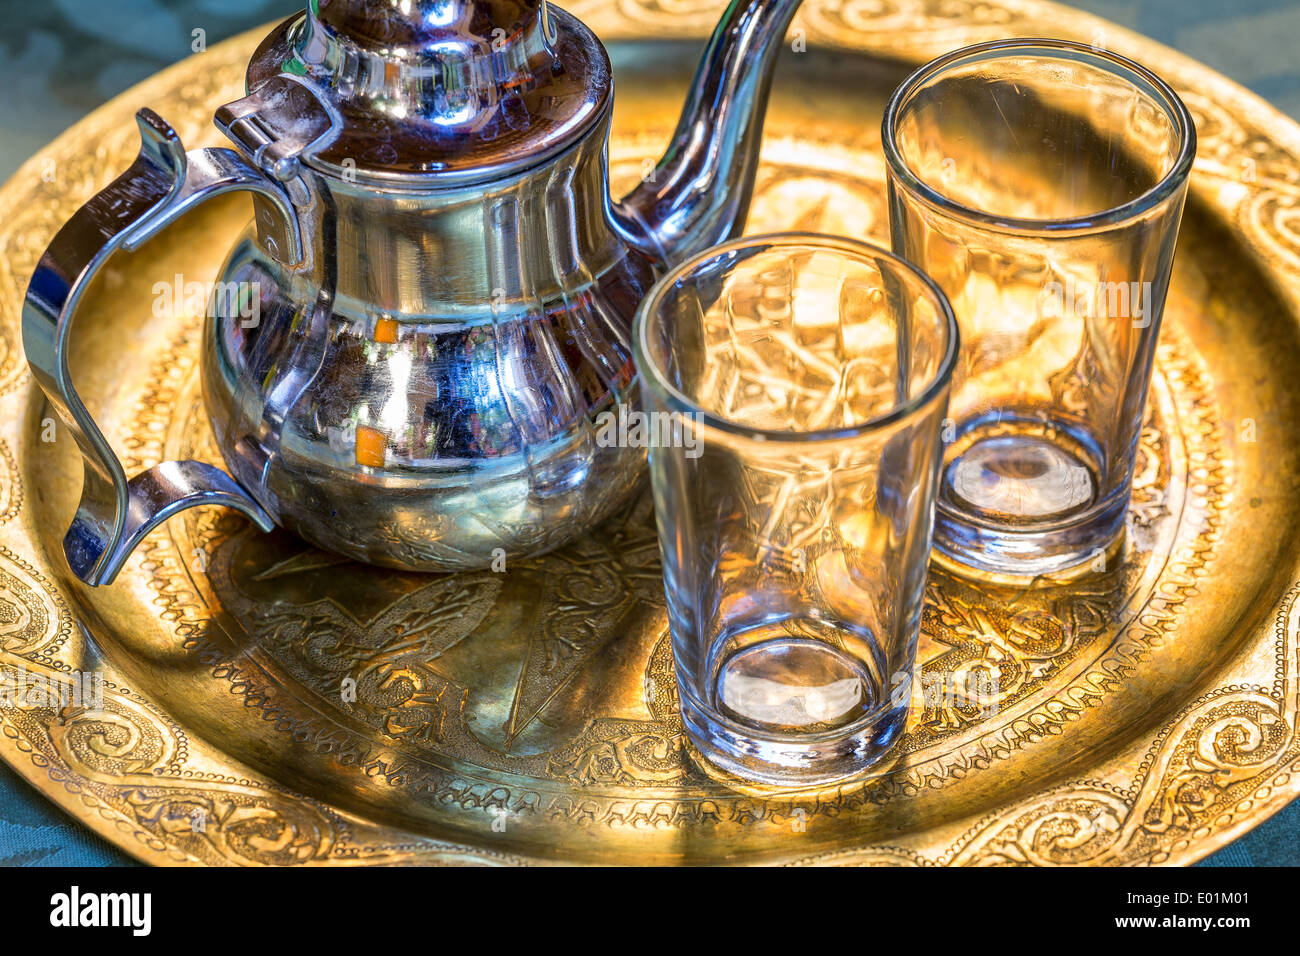 Tea serving the Moroccan way, Merzouga, Morocco, Africa Stock Photo